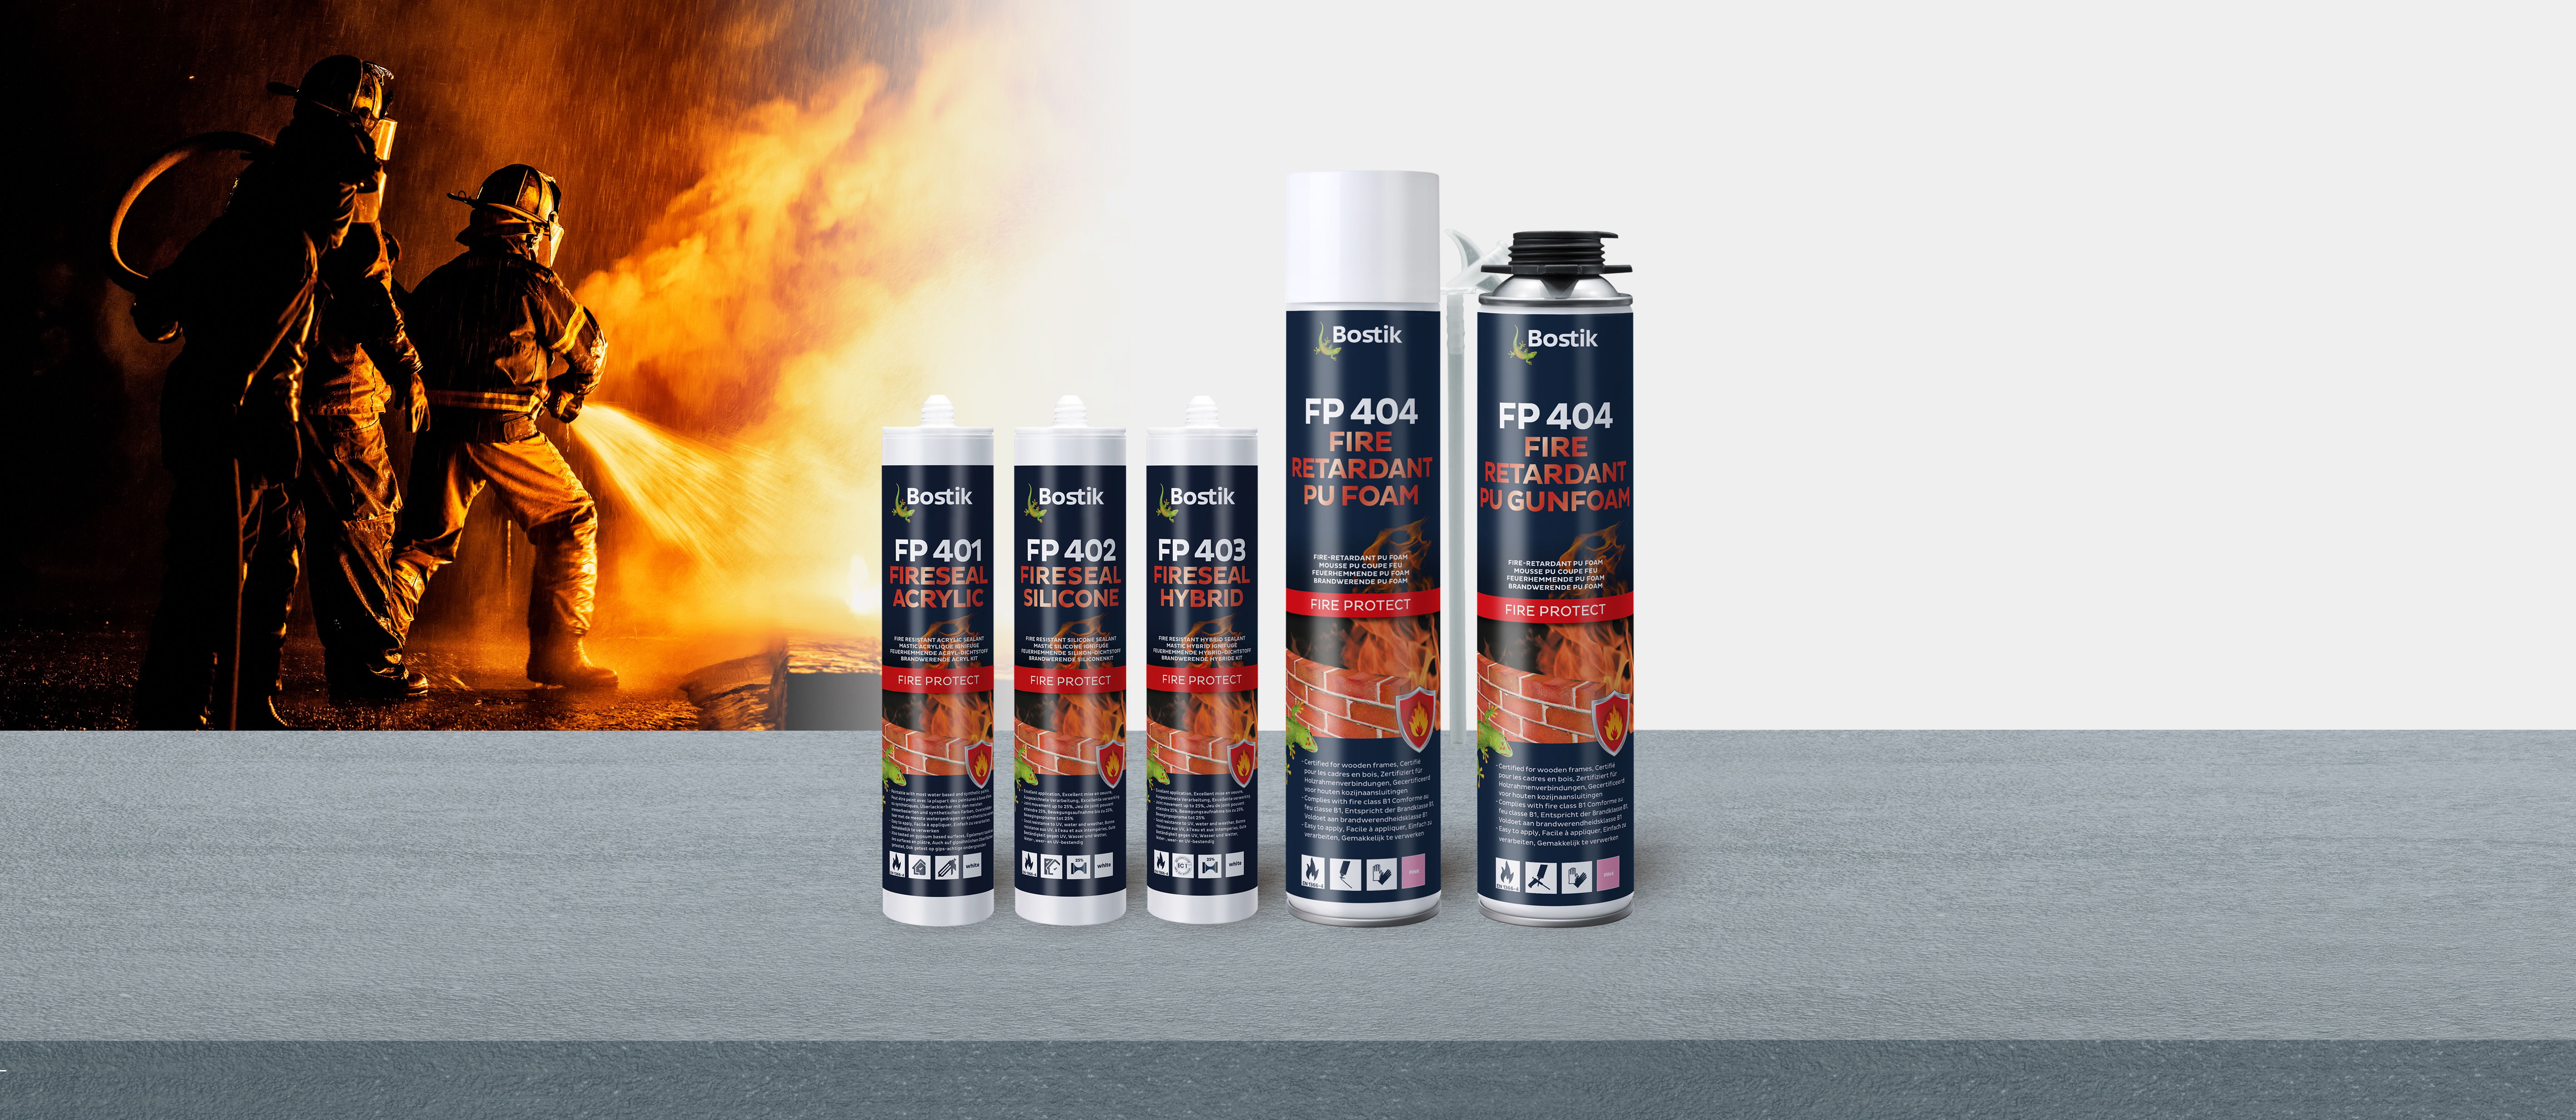 Bostik Fire Protect FP401, FP402, FP403 en FP404 voor lineaire voegen van siliconen, acrylaten, hybriden en schuim voldoen nu aan de SBI brandklasse B: reactie bij vuur.